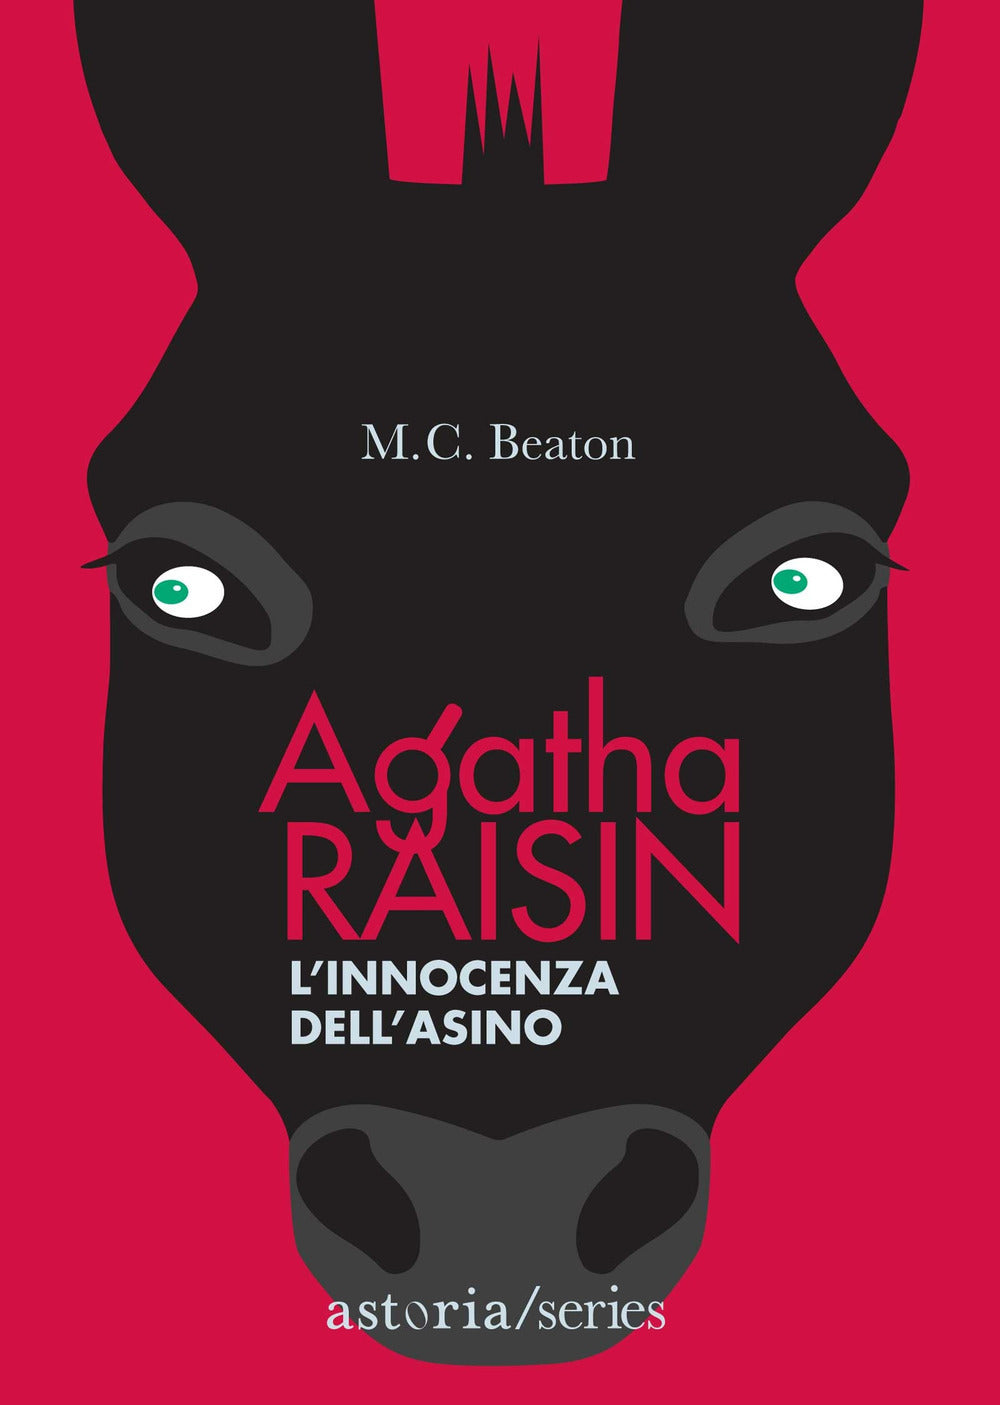 L'innocenza dell'asino. Agatha Raisin.